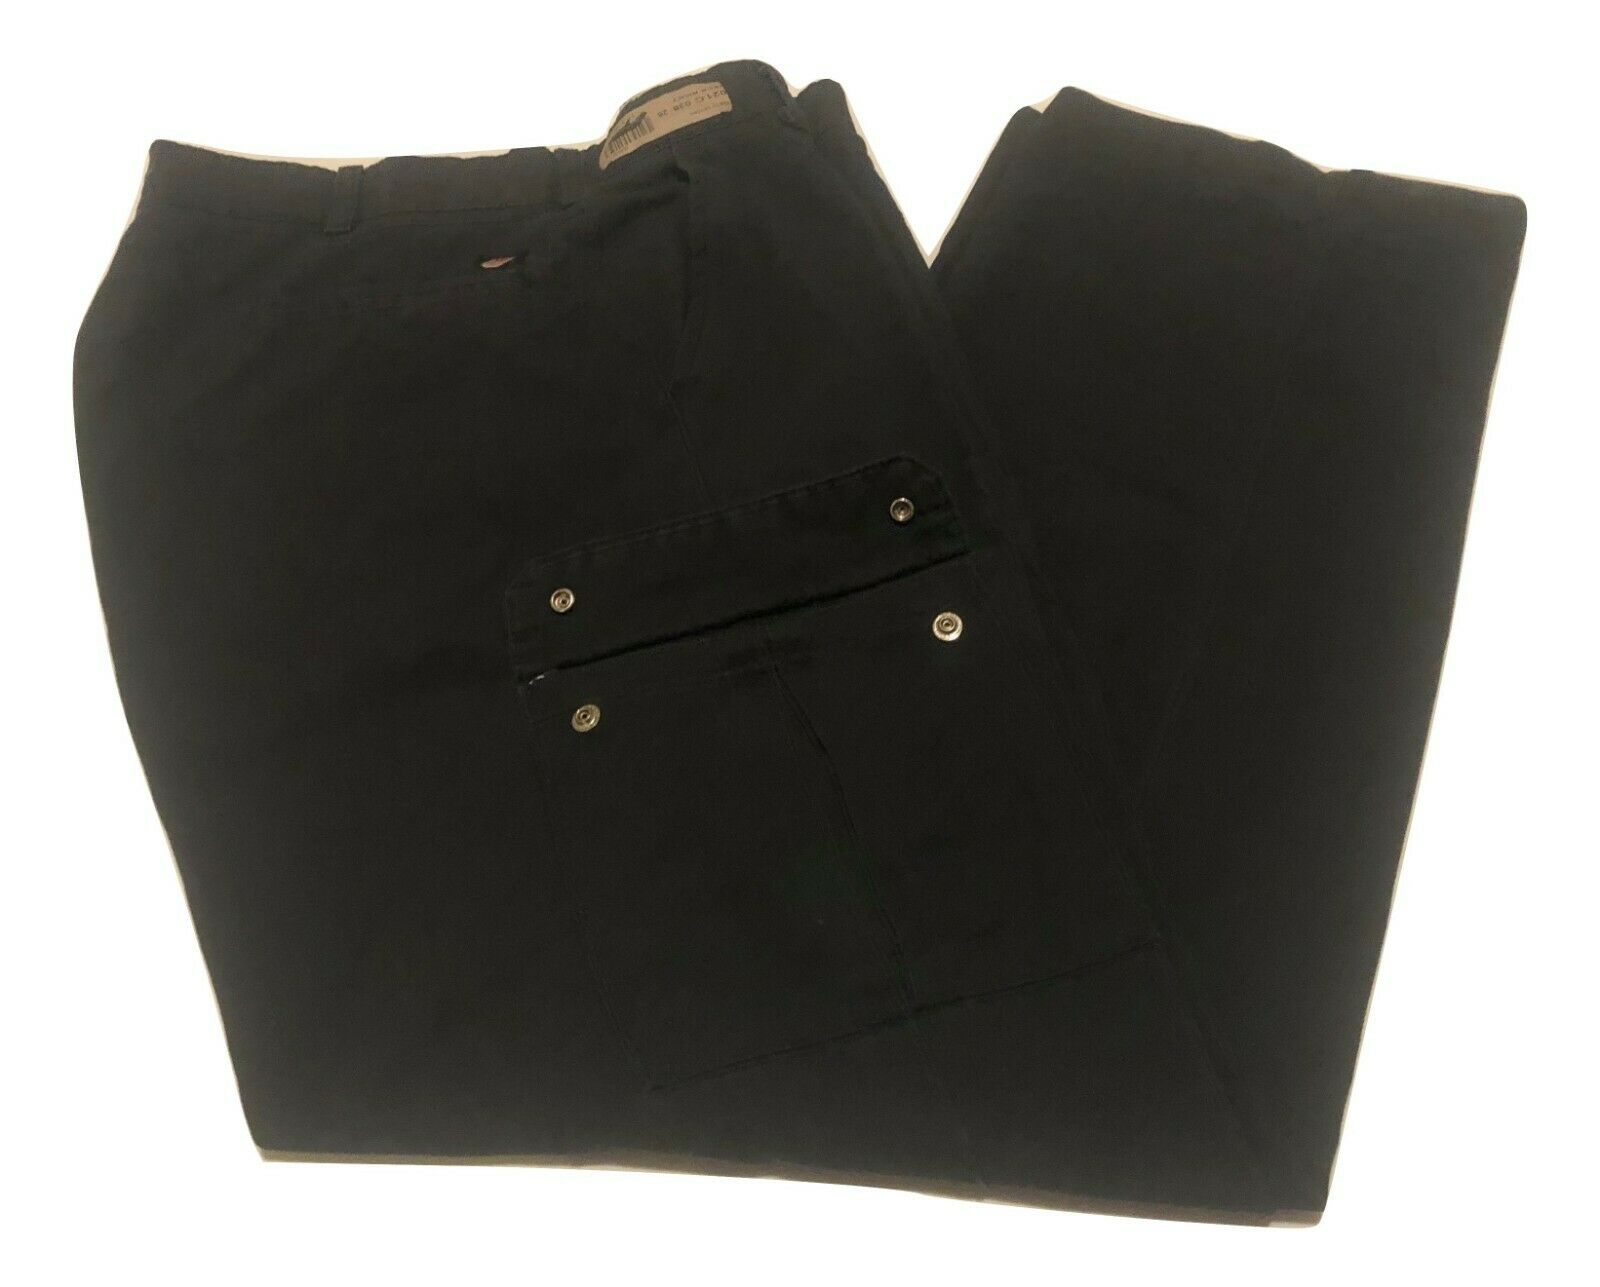 Black Cargo Work Pants - Red Kap, Cintas, Dickies, Unifirst Etc-  Used Uniform